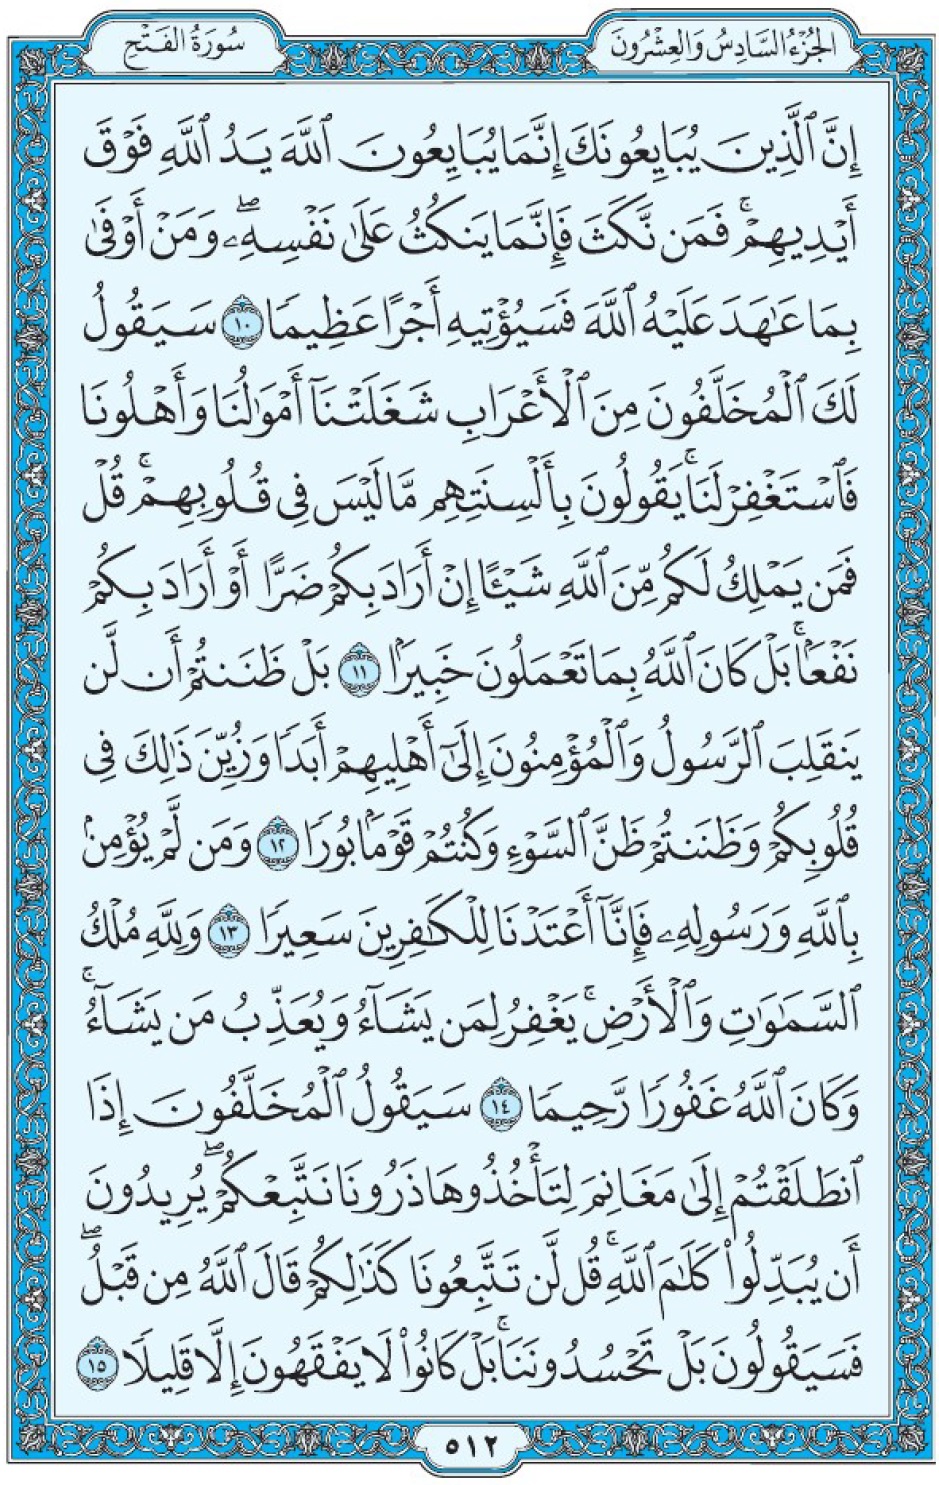 Коран Мединский мусхаф страница 512, сура 48 аль-Фатх, аят 10-15